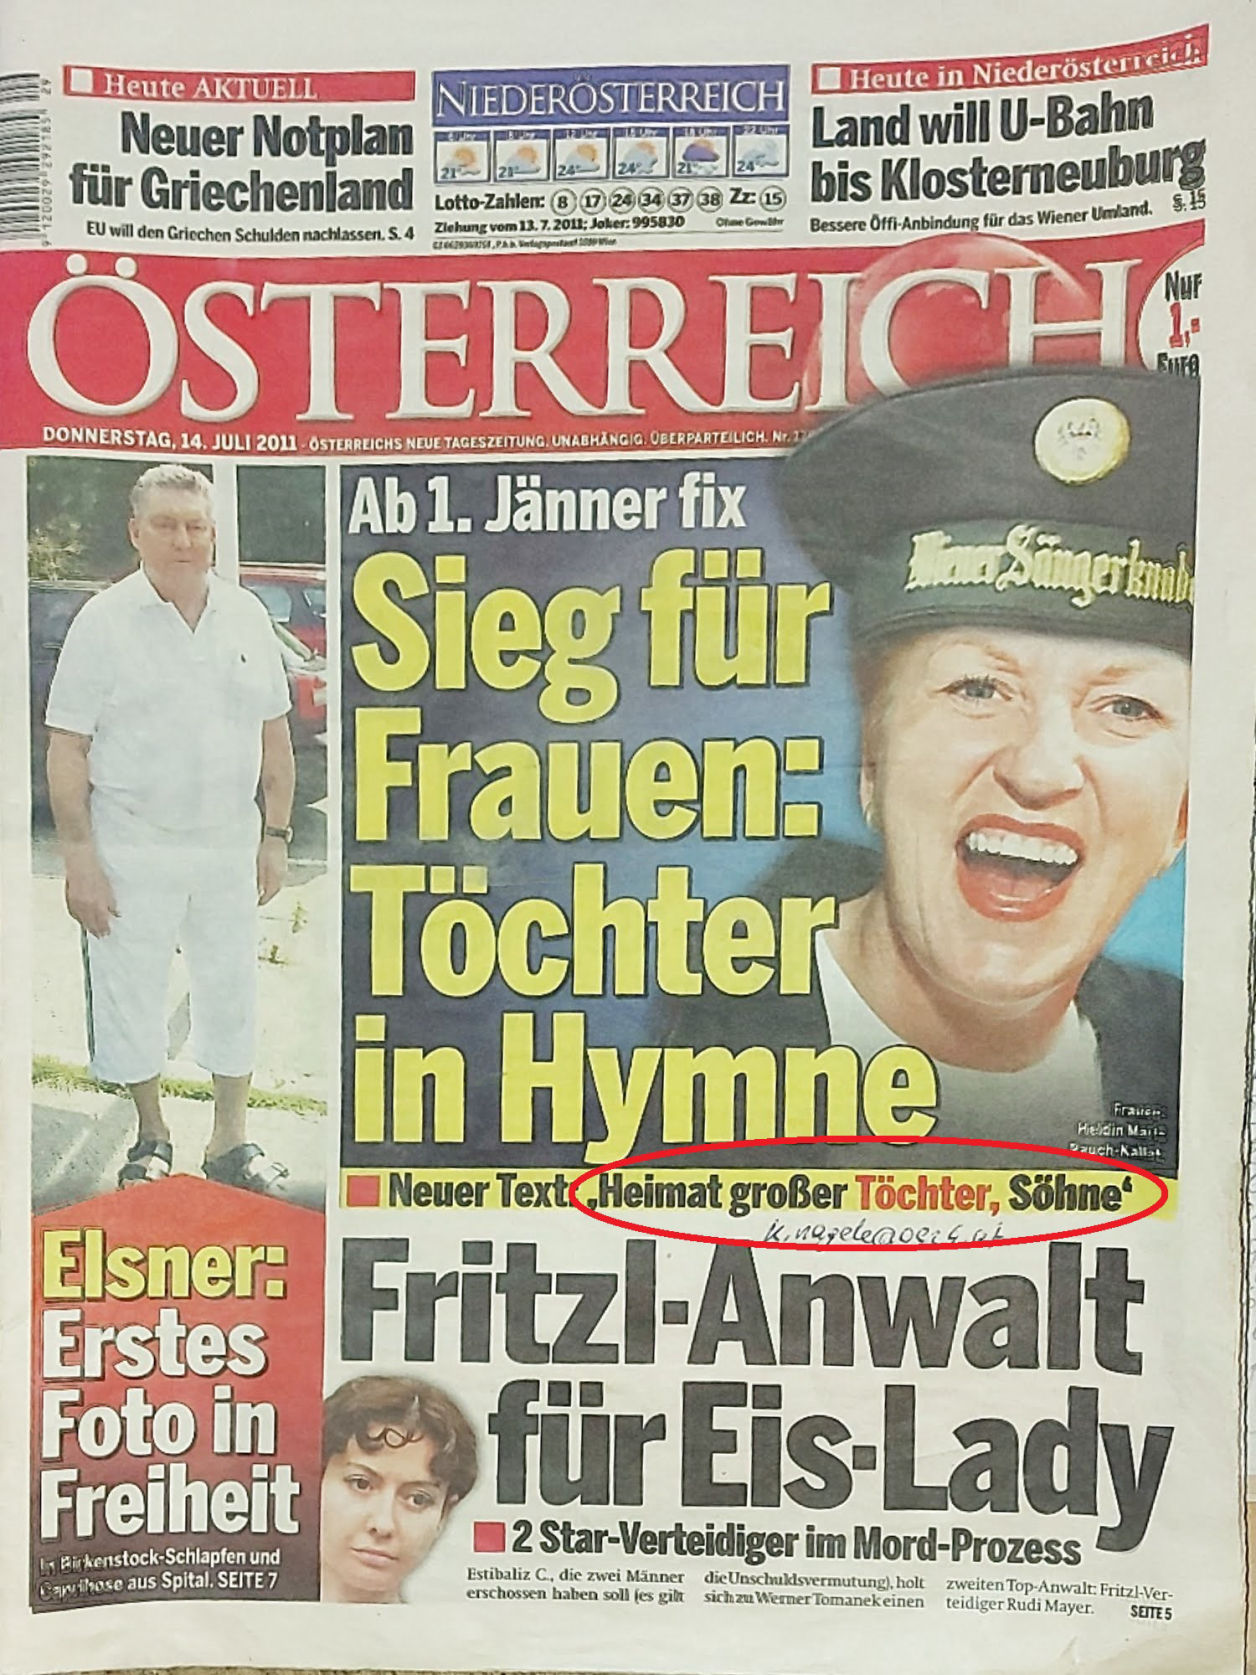 Zeitung Österreich, Österreich, Sieg für Frauen, Töchter in Hymne